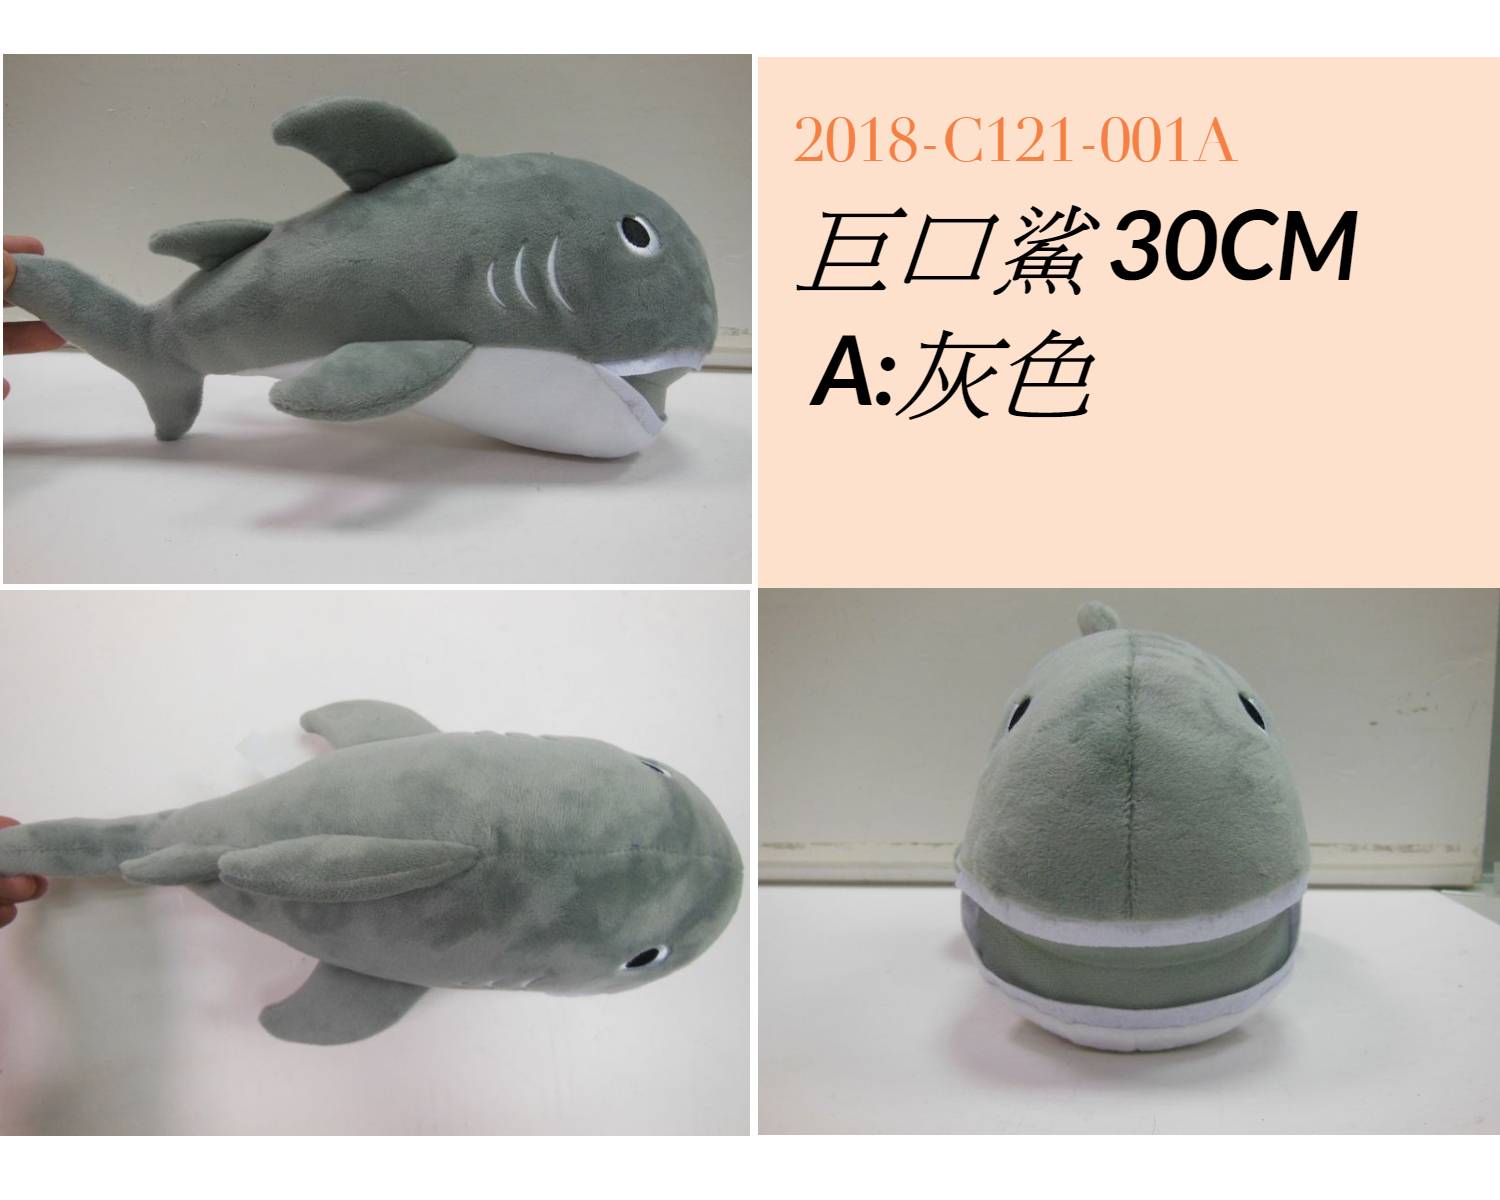 2018-C121-001A 巨口鯊 30CM A:灰色